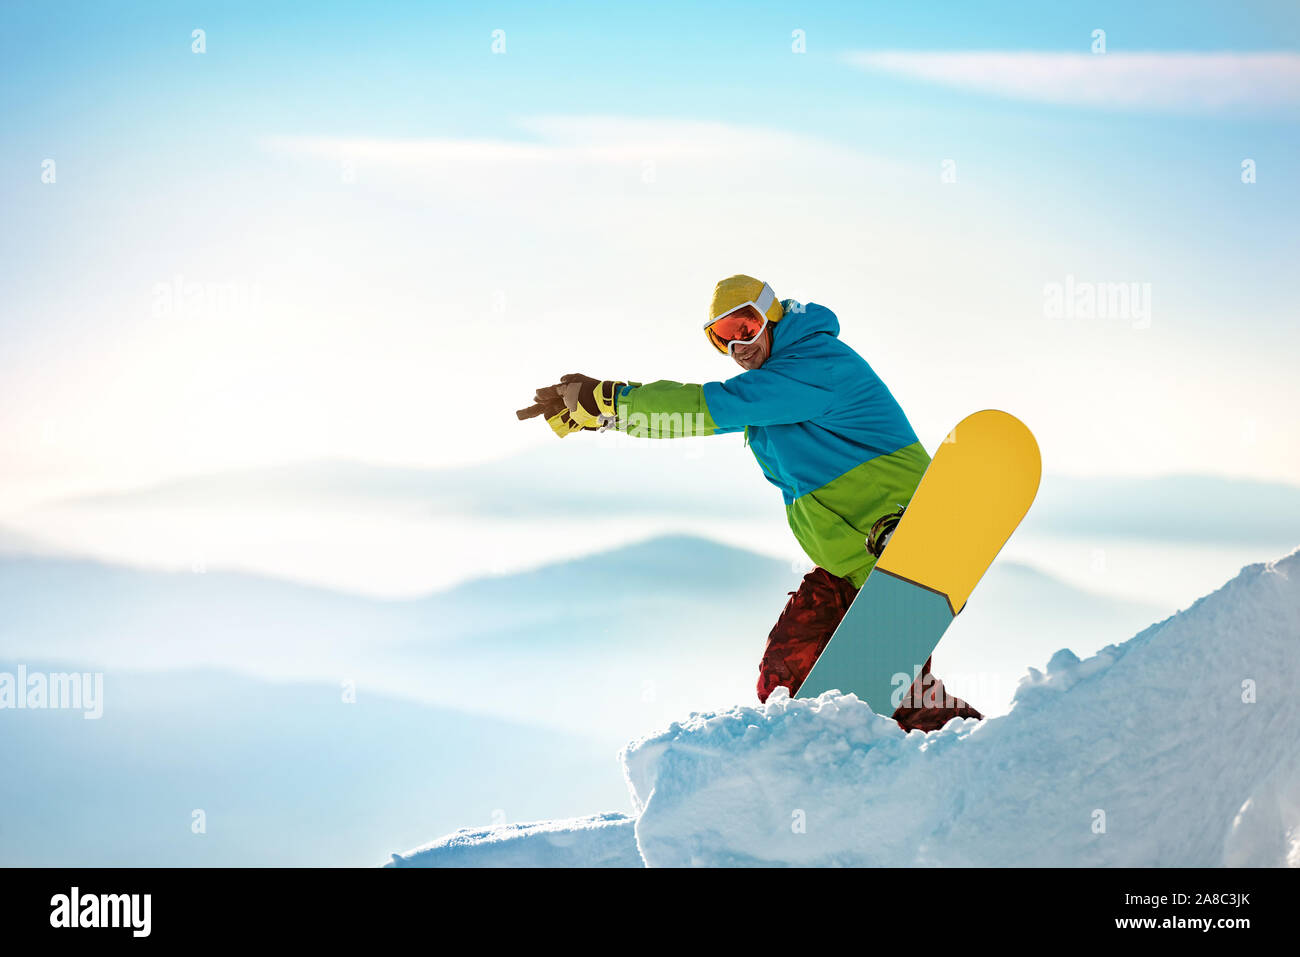 Snowboarder steht mit dem Snowboard auf der Piste und auf etwas. Platz für Text Stockfoto